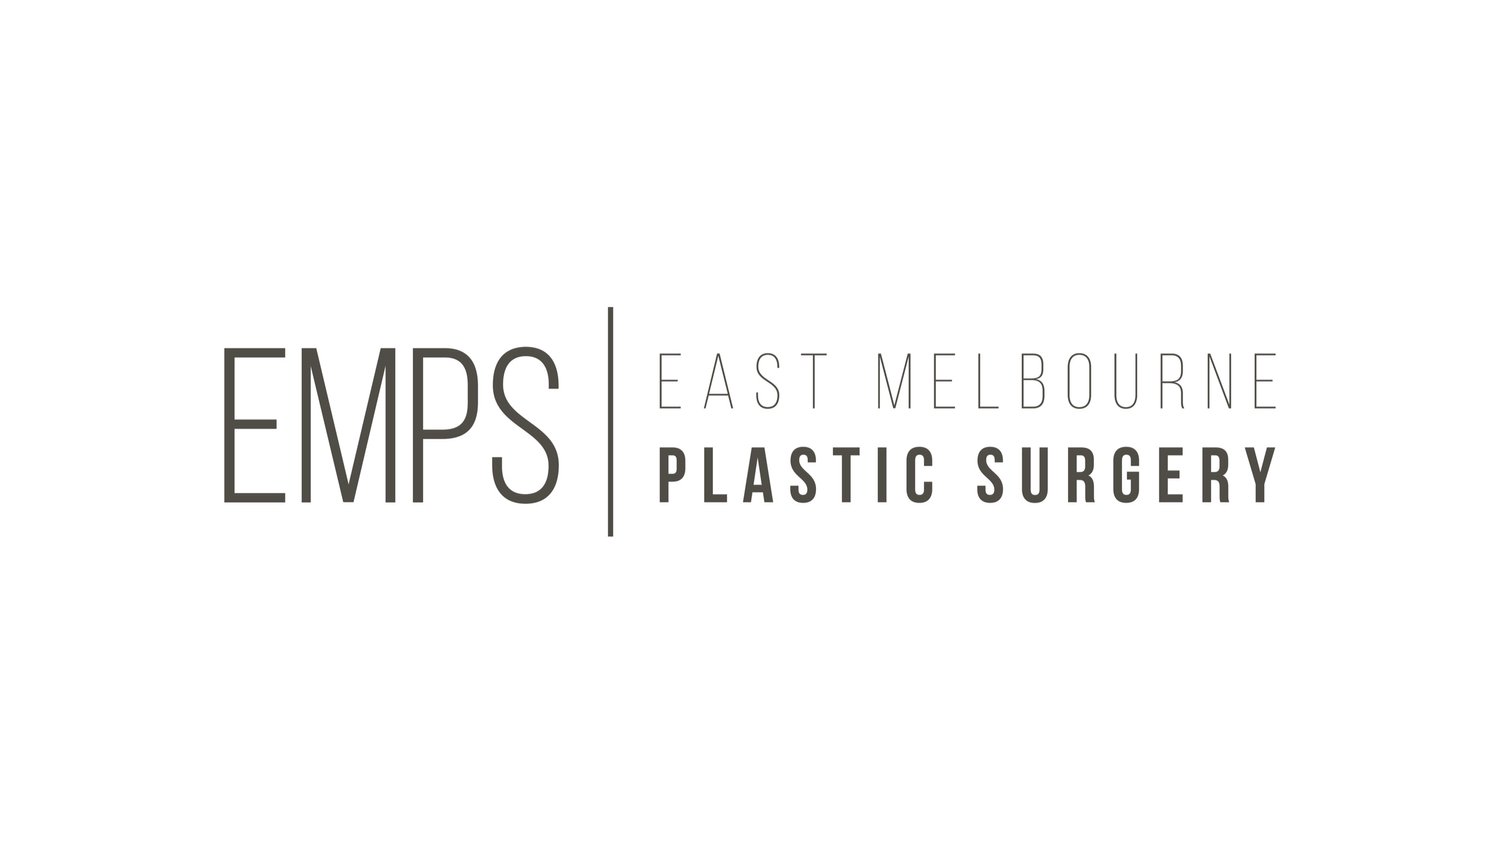 East Melbourne Plastic Surgery